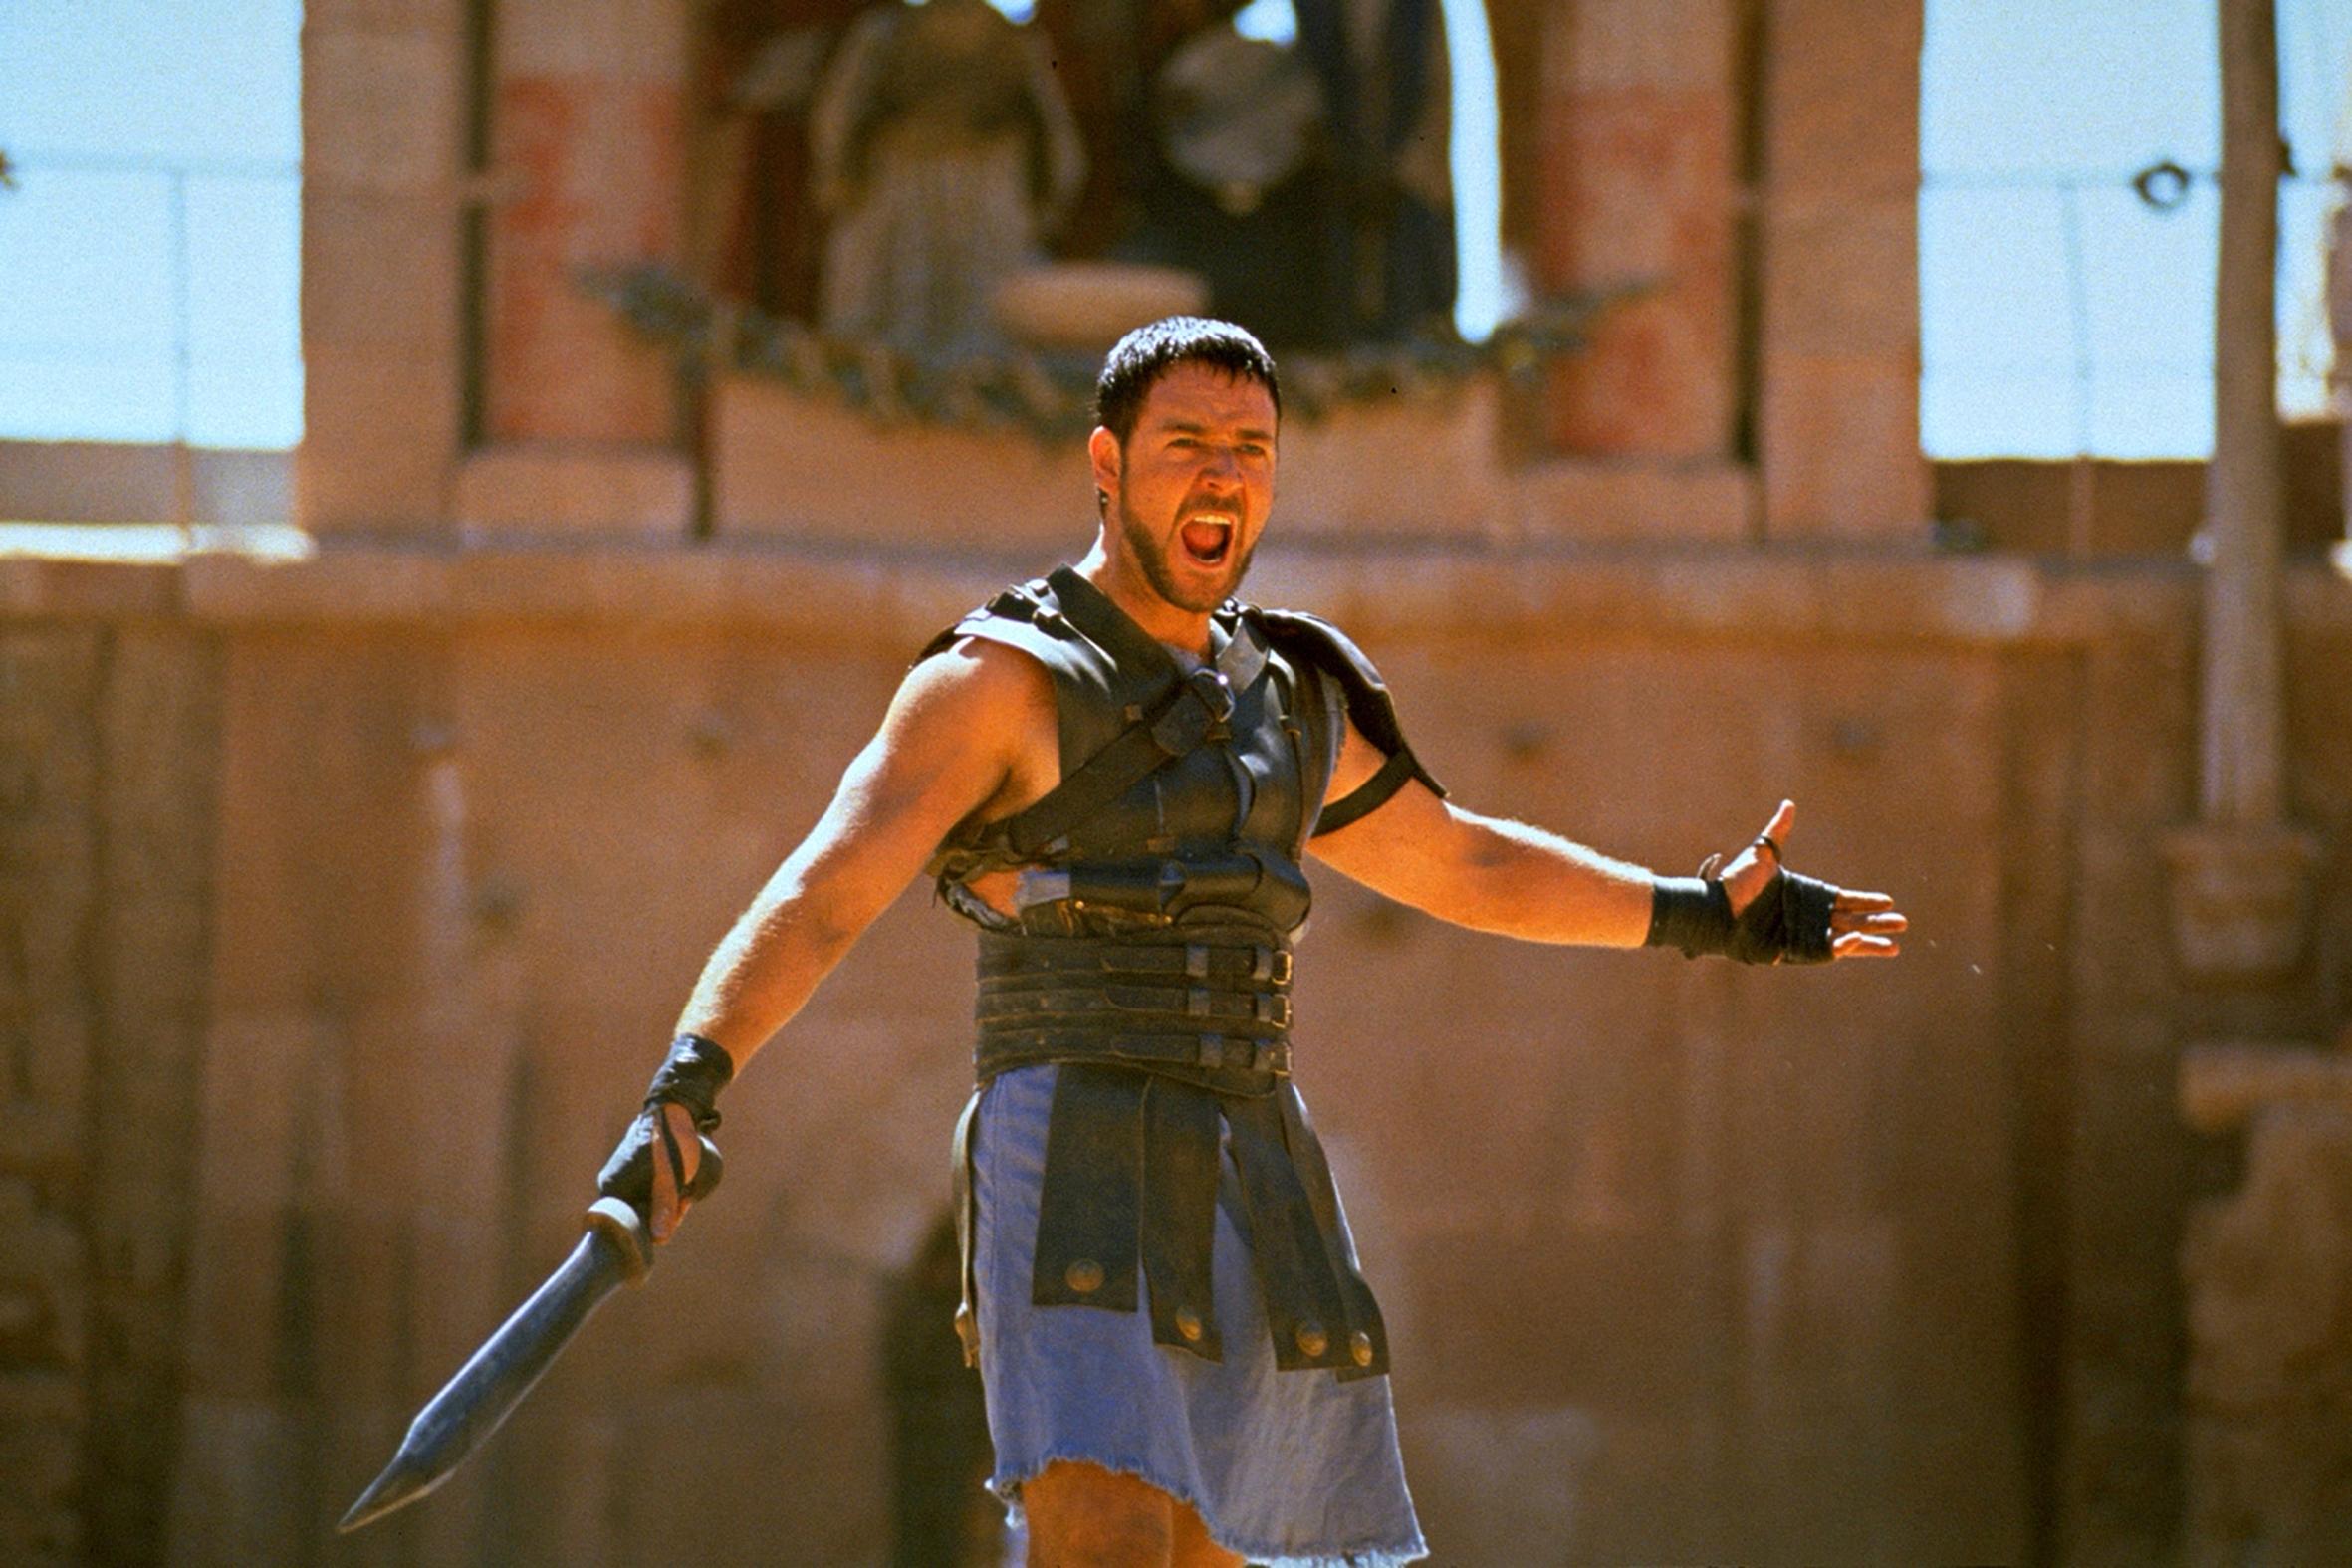 russell crowe în filmul gladiatorul, țipând la public, în arena gladiatorilor. are sabia în mână și e îmbrăcat în armură, cu fundal bej în spate